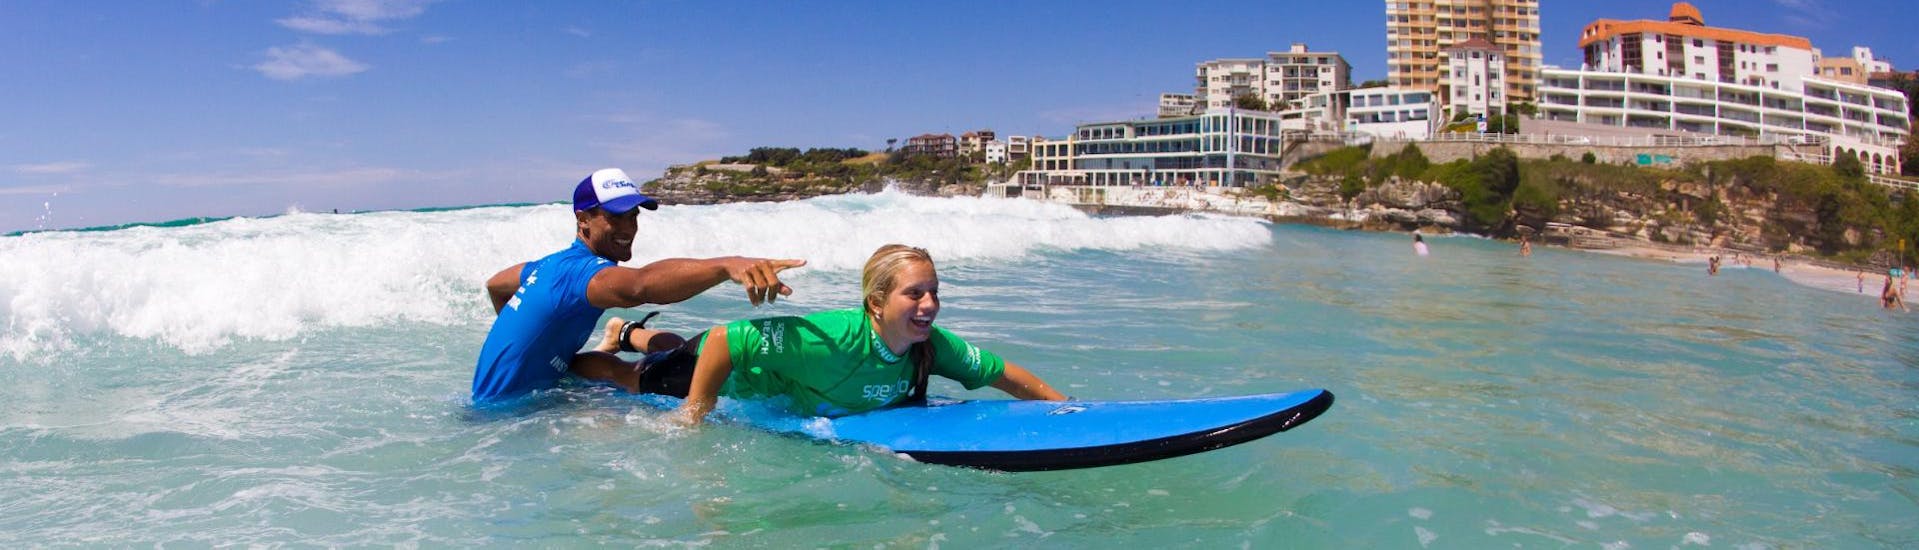 Surfkurs in Bondi Beach (ab 12 J.) für Anfänger.